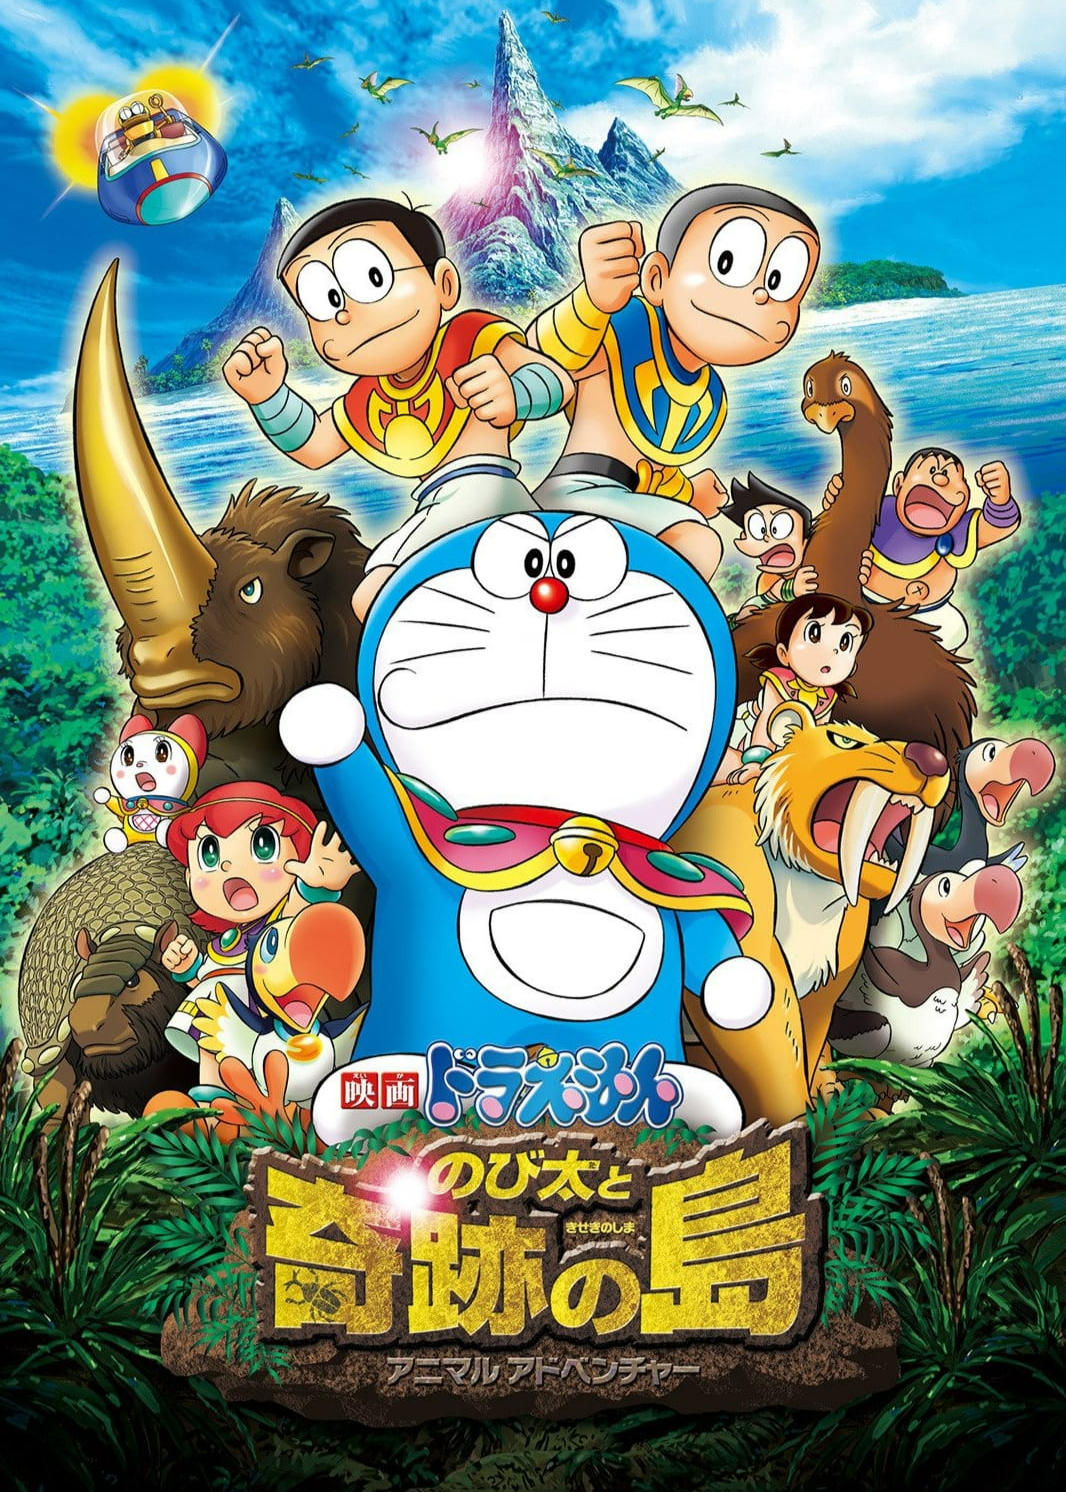 Poster Phim Doraemon: Nobita & Binh Đoàn Người Sắt - Đôi Cánh Thiên Thần (Doraemon: Nobita and the Island of Miracles - Animal Adventure)